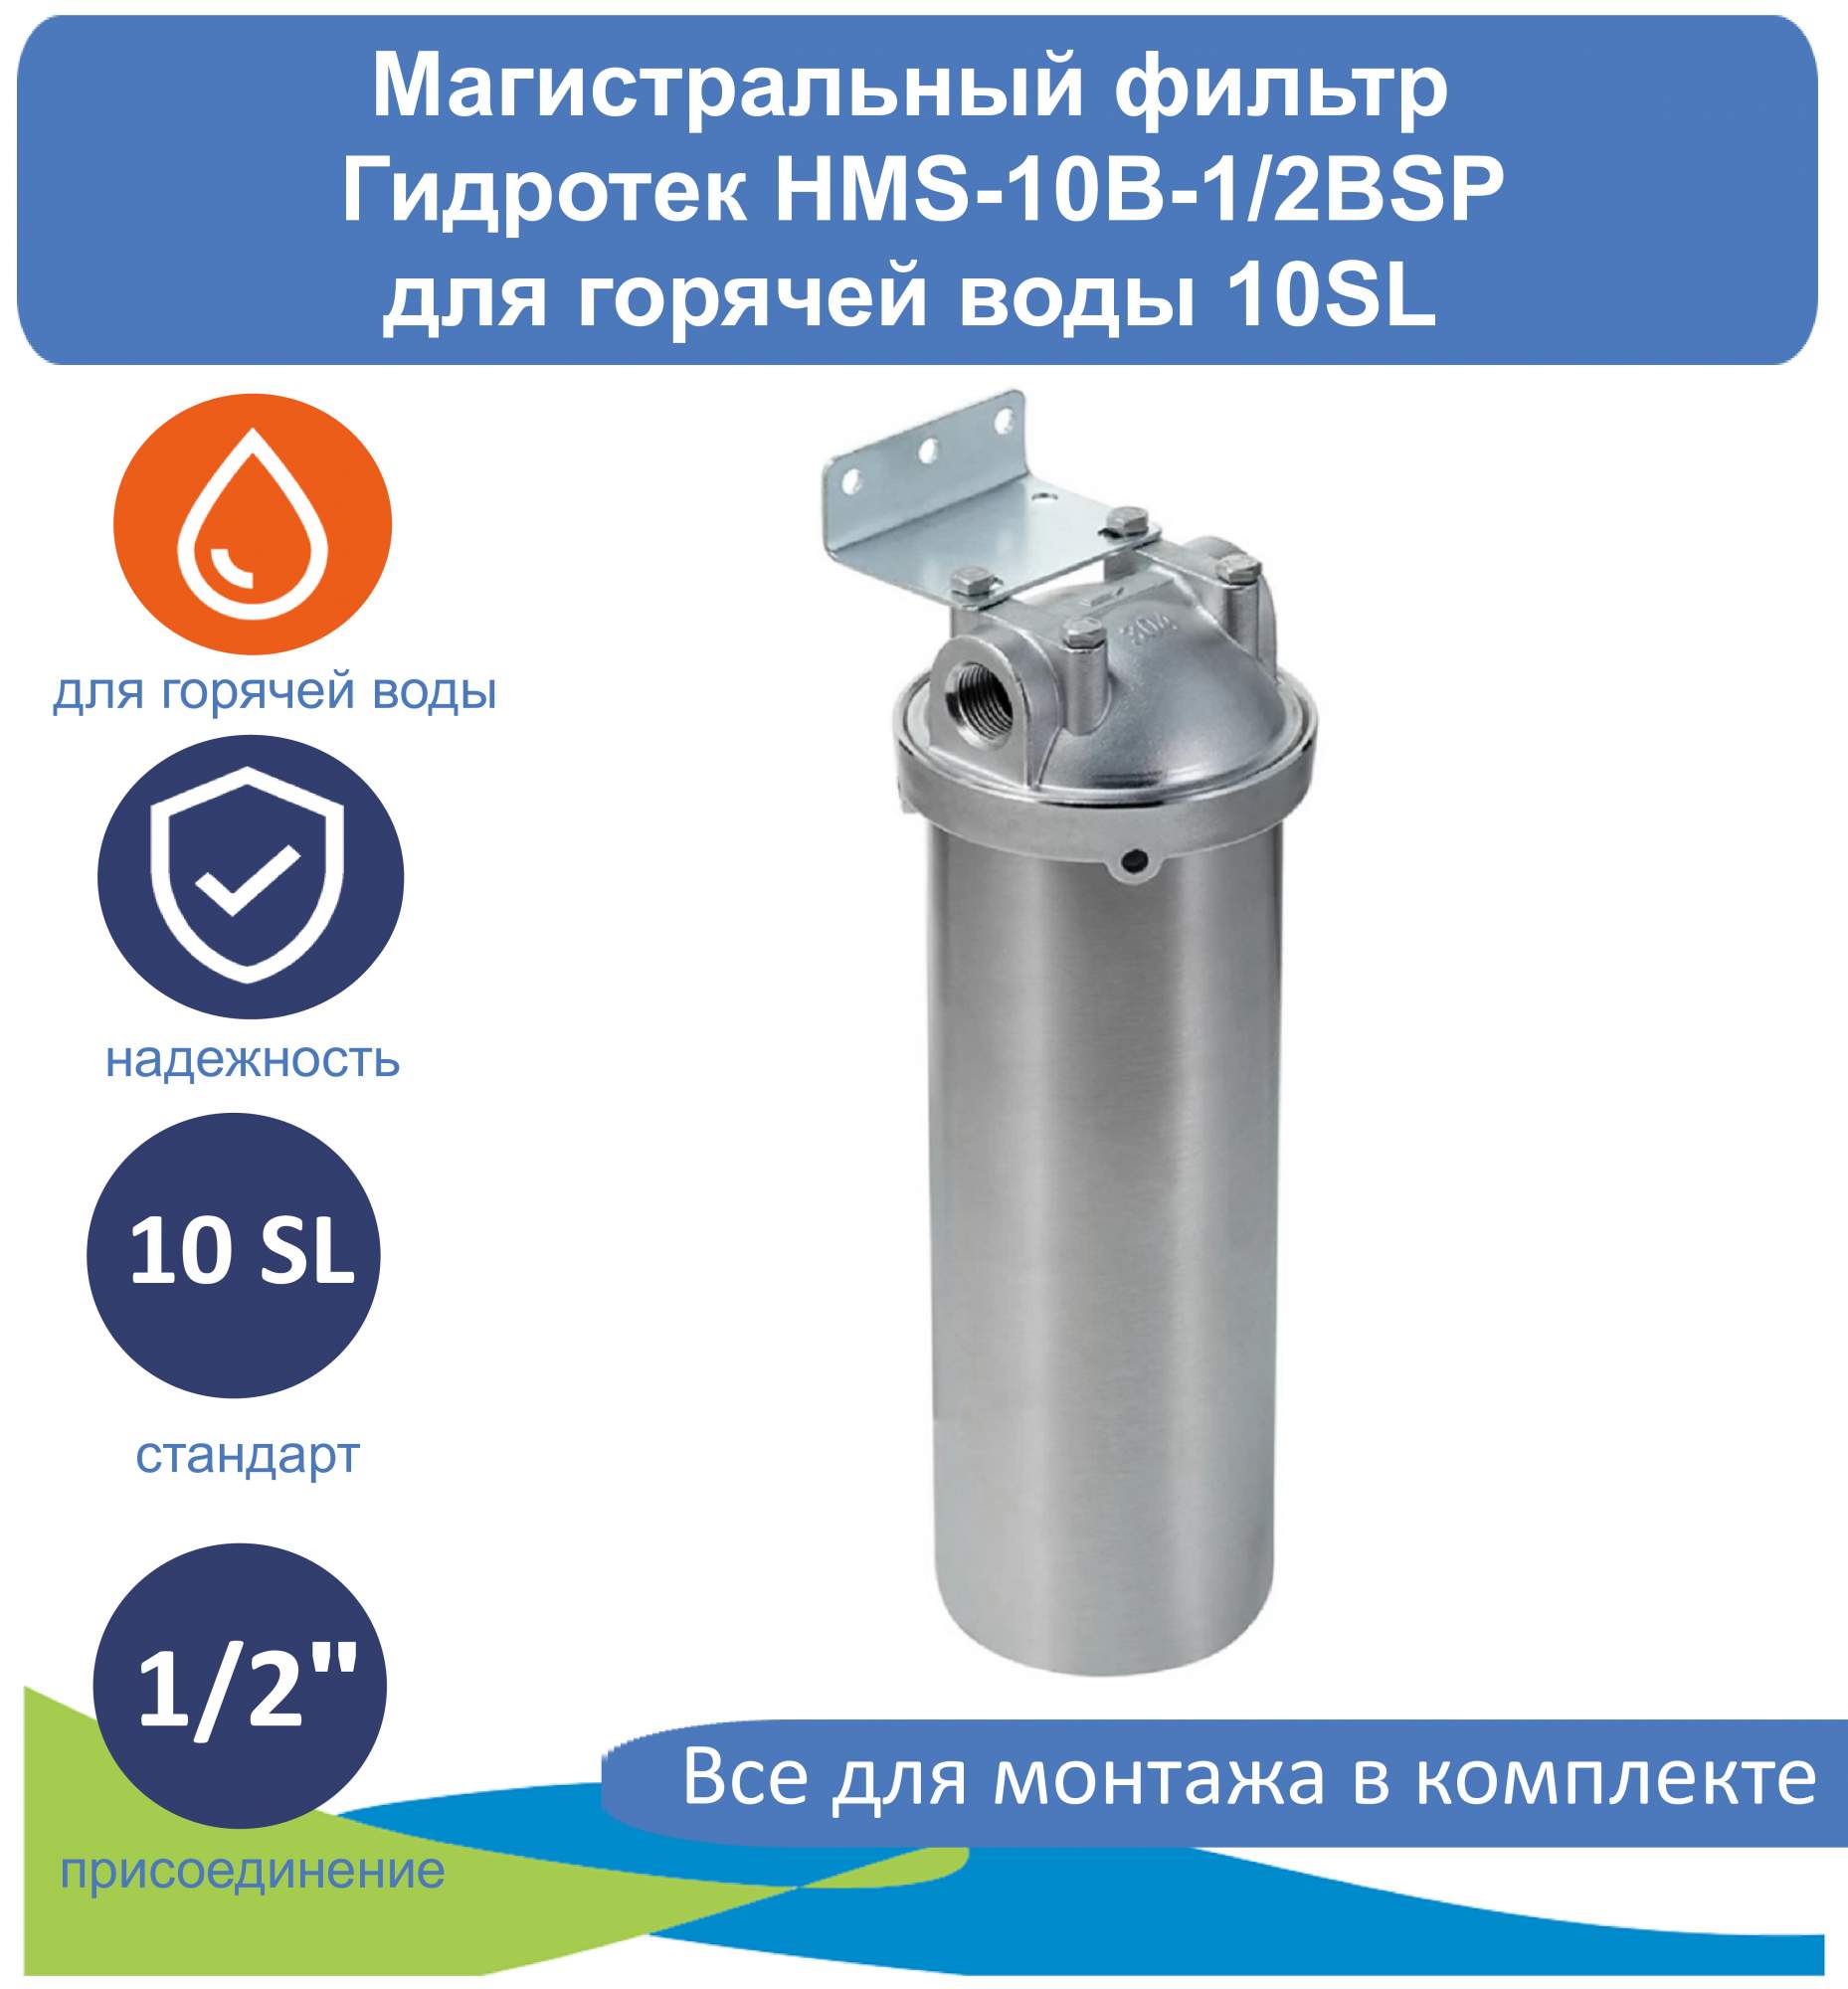 Магистральный фильтр (корпус) для горячей воды 10SL Гидротек HMS-10B-1/2BSP